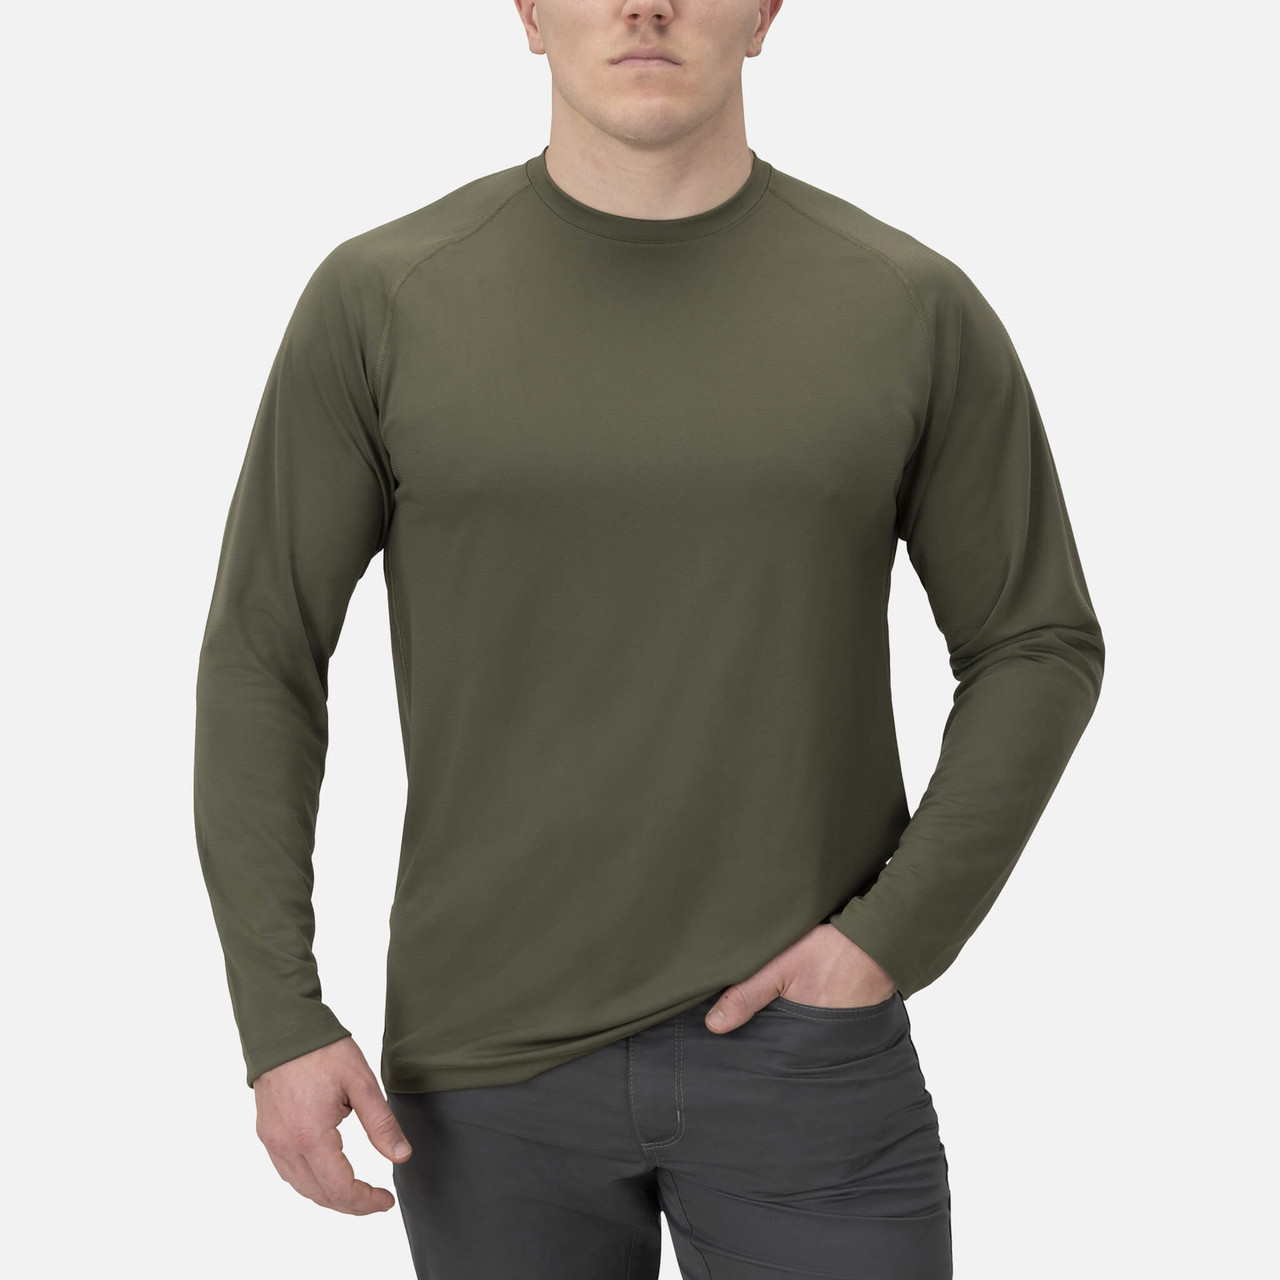 Full Guard Performance Long Sleeve Shirt - Ranger Green - Warrior Poet  Supply Co